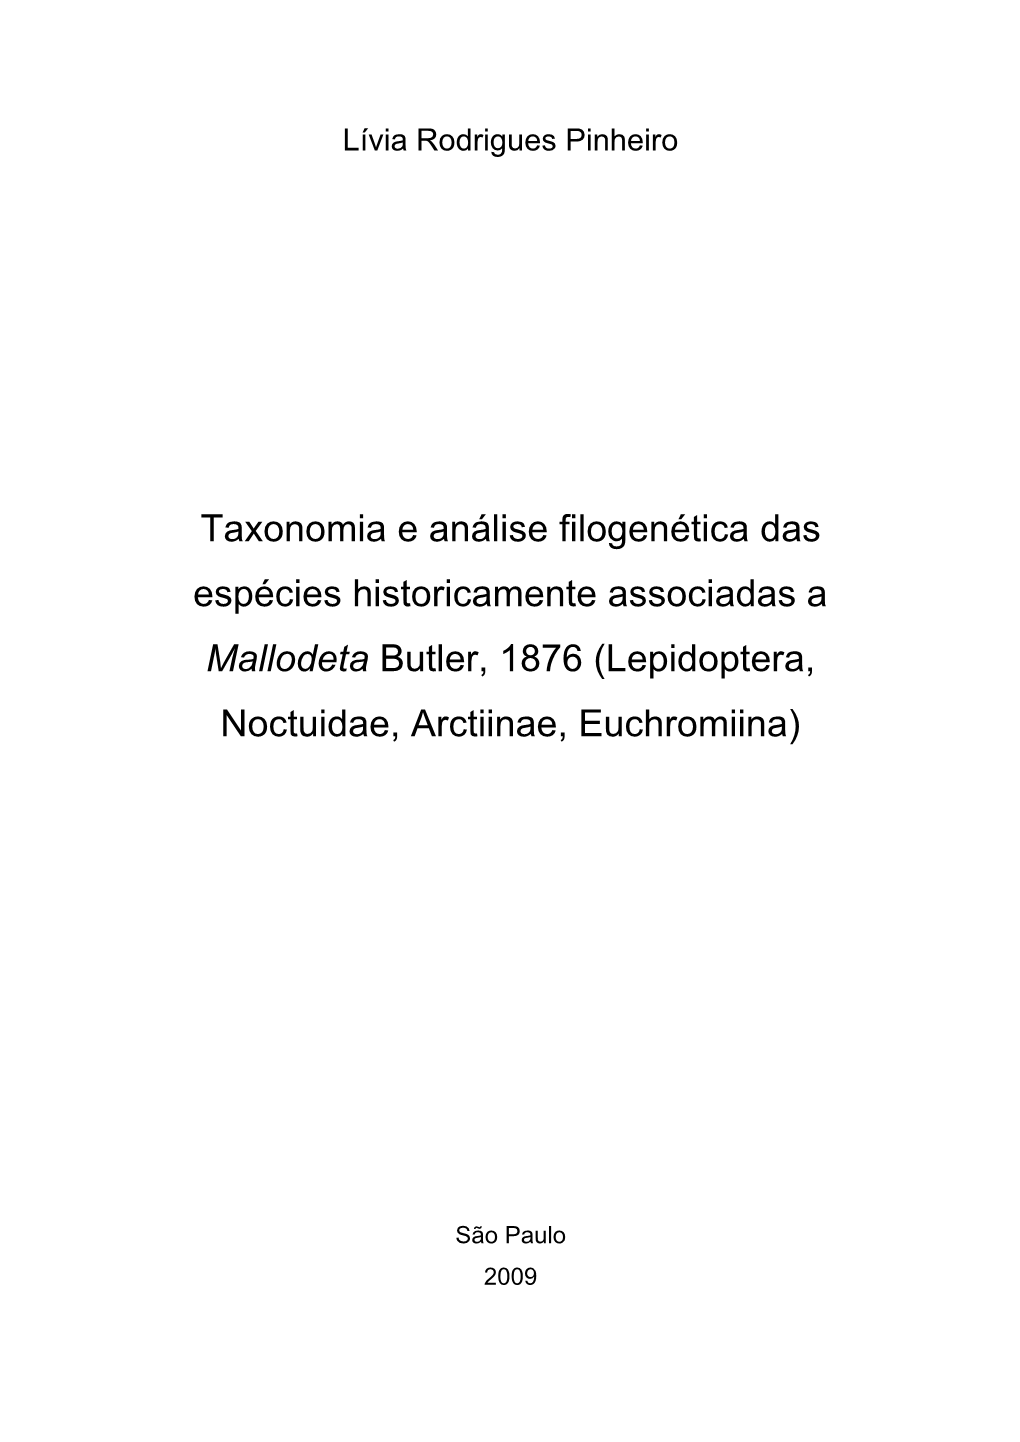 Taxonomia E Análise Filogenética Das Espécies Historicamente Associadas a Mallodeta Butler, 1876 (Lepidoptera, Noctuidae, Arctiinae, Euchromiina)